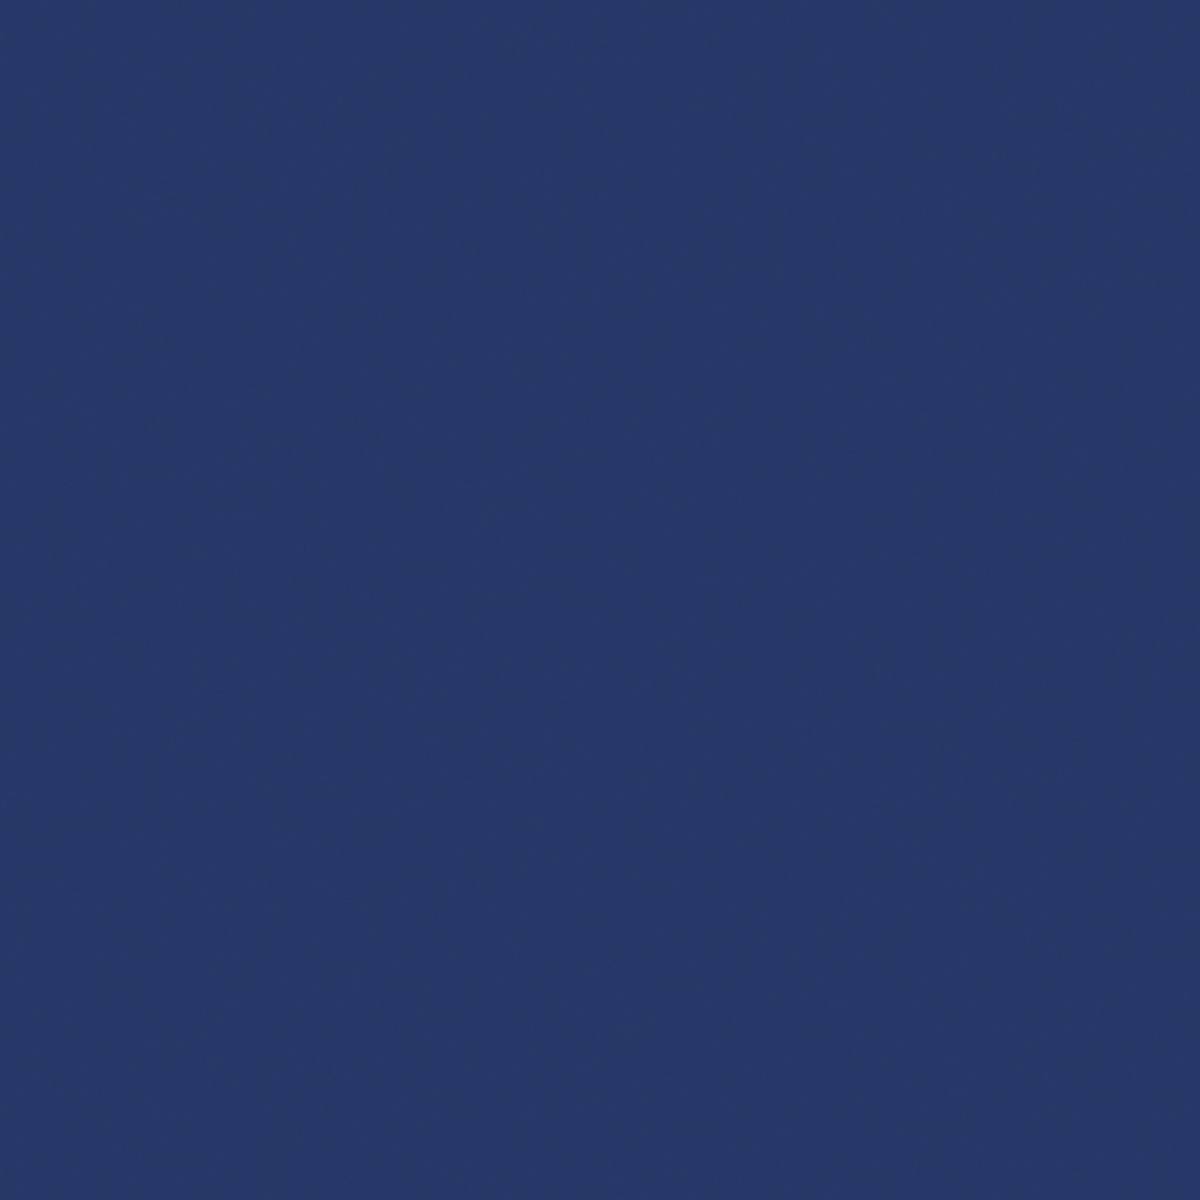 3M Scotchcal Pellicola colorata traslucida 3630-187 Infinity Blue 1,22 m x 45,7 m